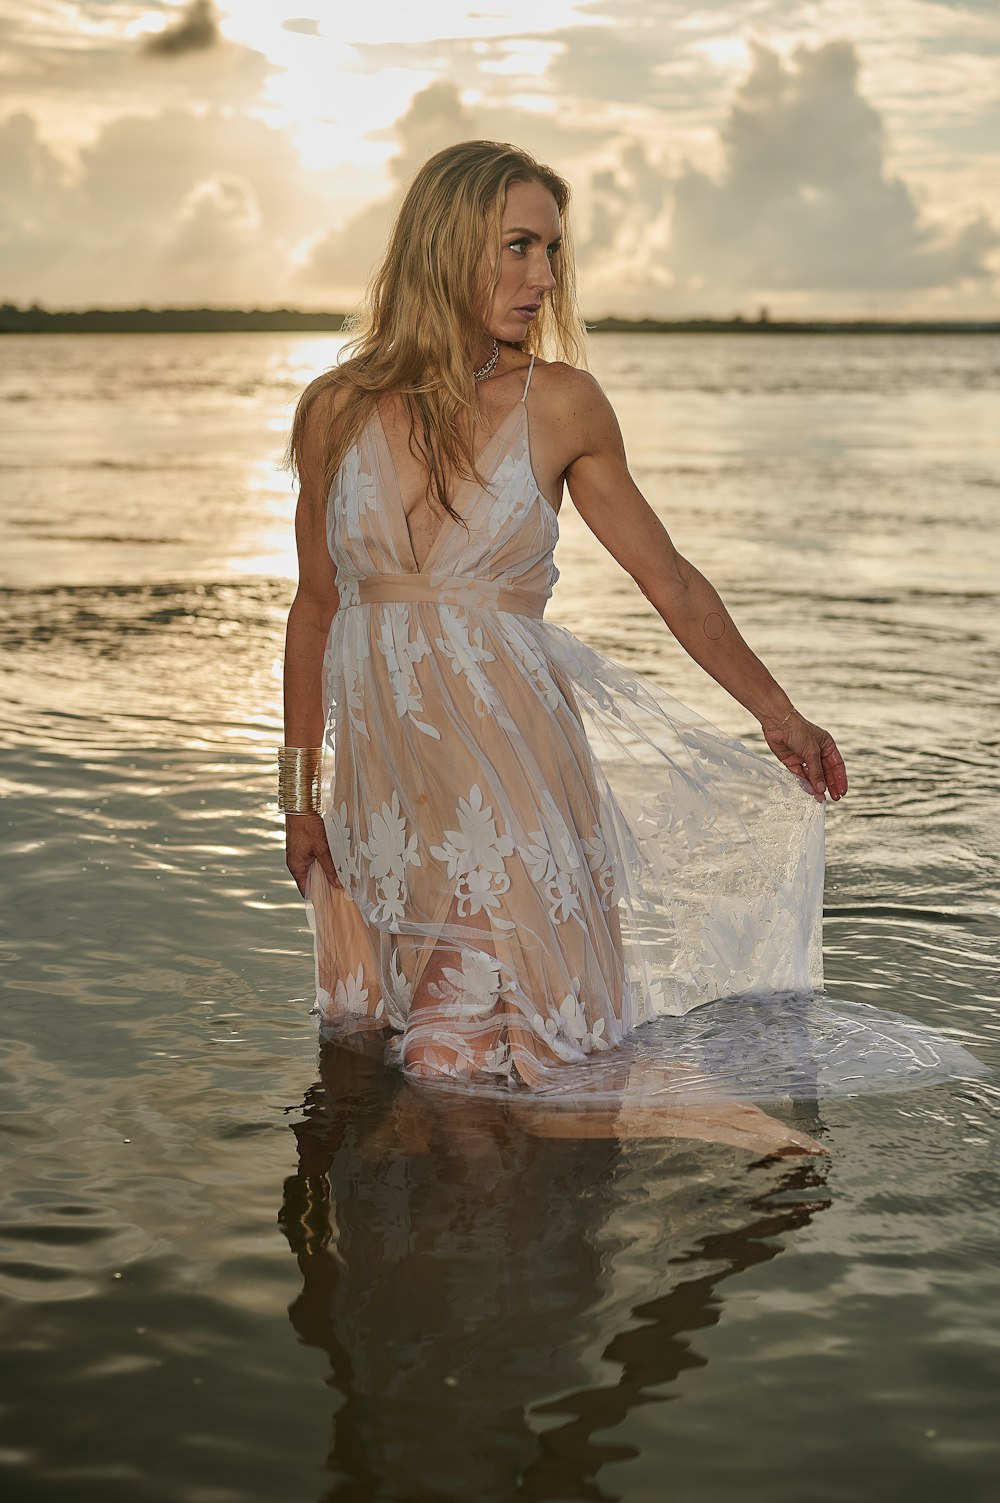 una persona in un vestito bianco in piedi nell'acqua